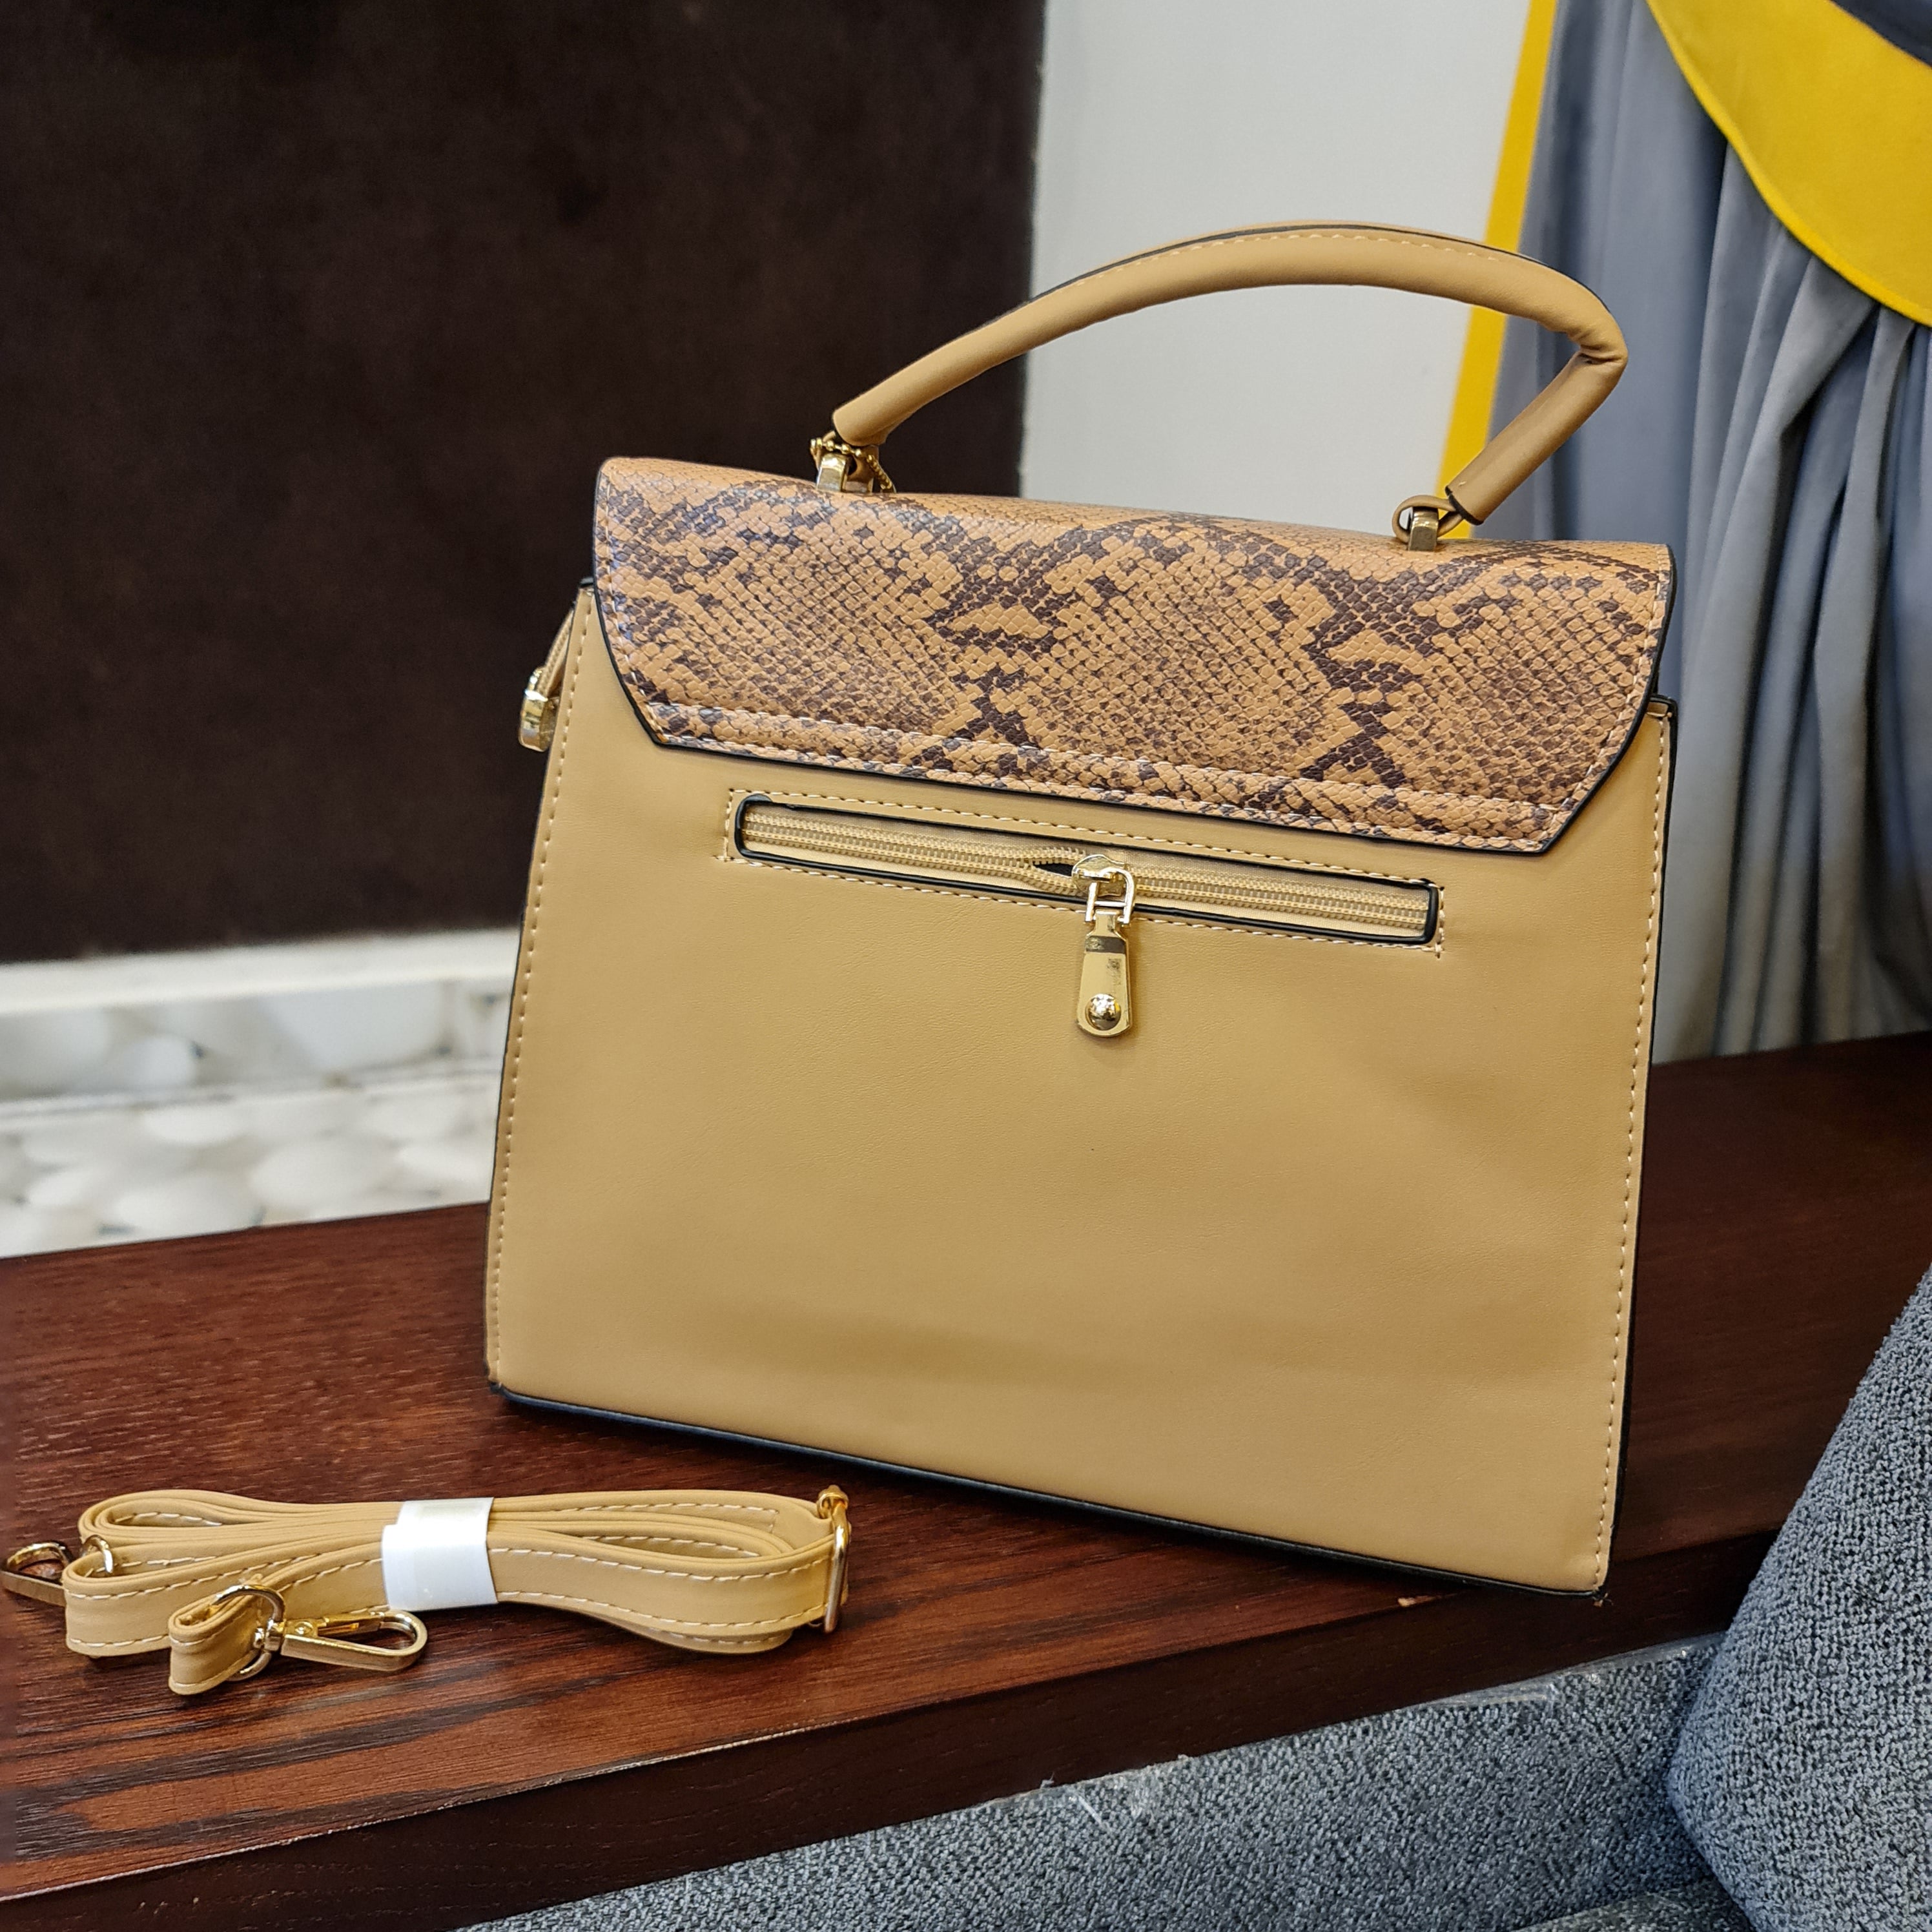 women's handbags - Maha fashions -  women's handbags